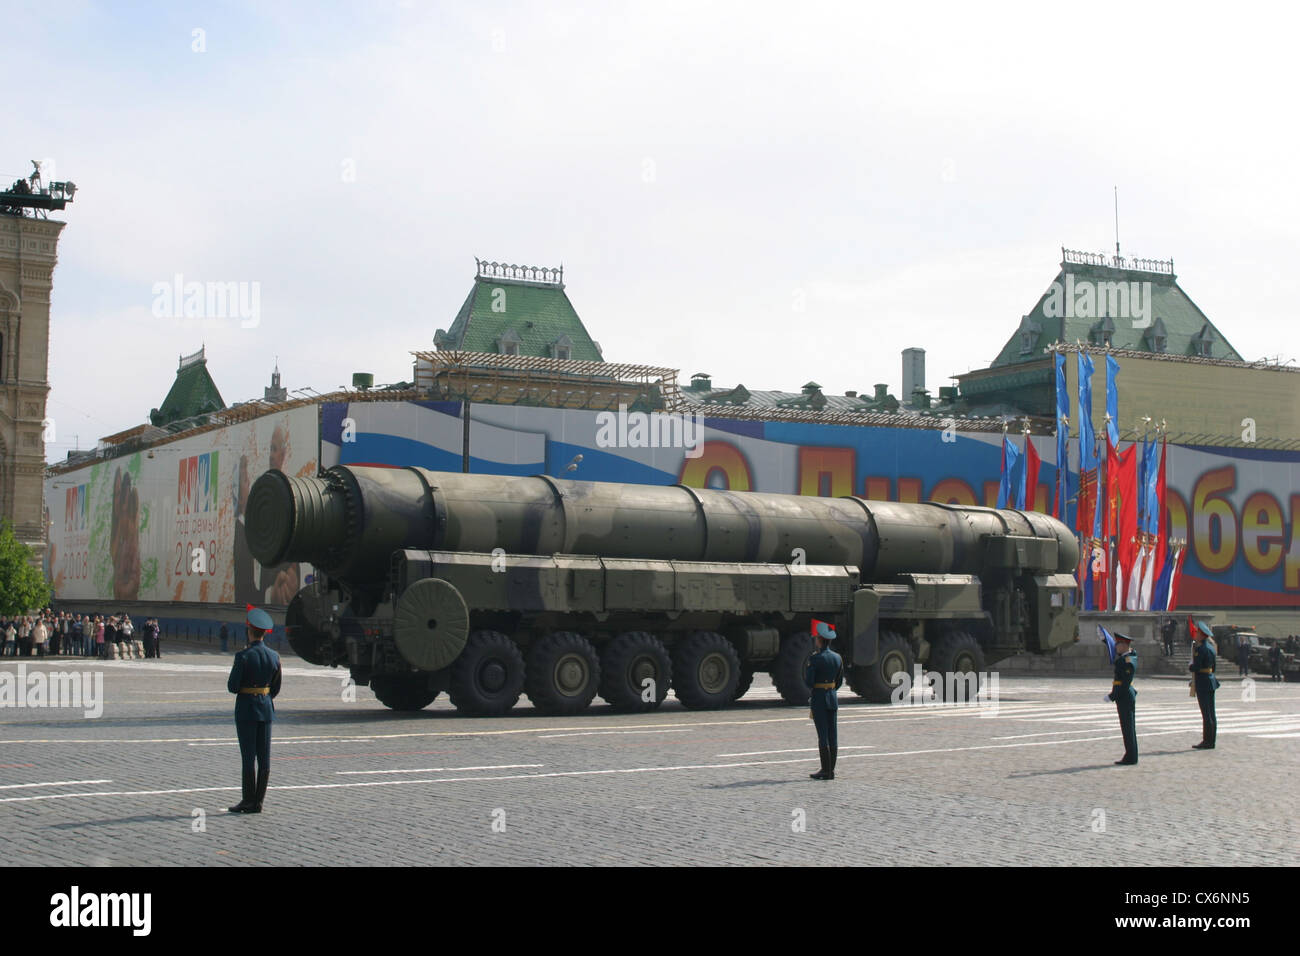 Vettore russo con Topol-M intercontinental missile balistico nella Piazza Rossa di Mosca, Russia, durante una parata militare Foto Stock